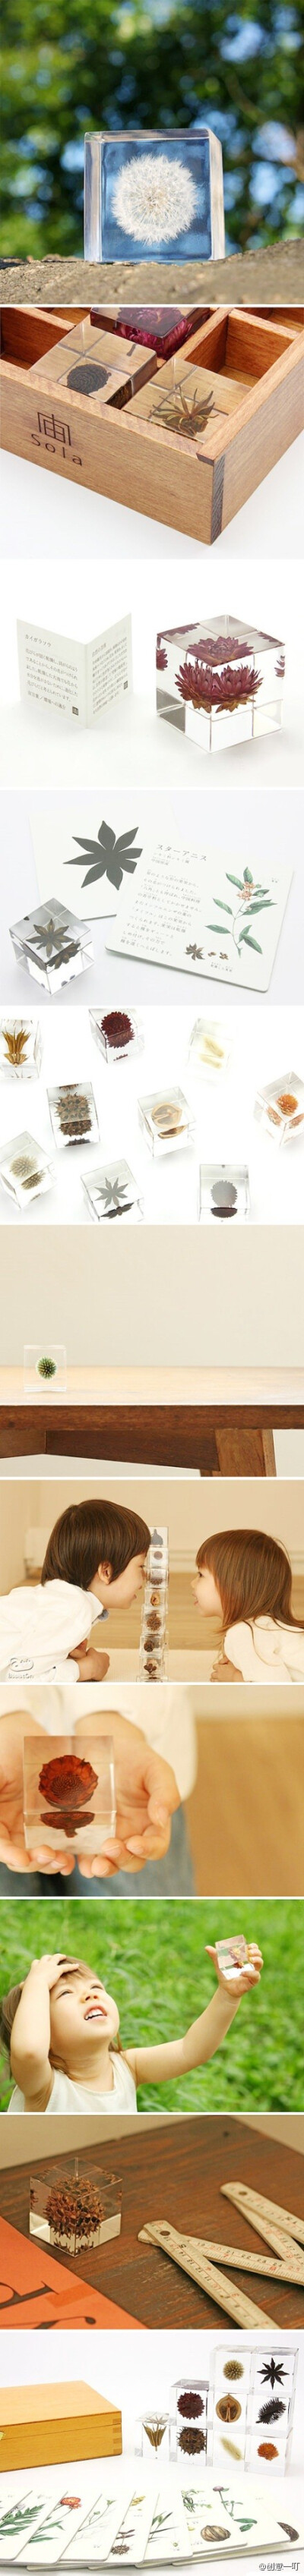 【自然系】 日本设计师吉村紘一的创意品牌Sola，使用各种植物的种子做成的小物件，包装盒也非常漂亮！用来当作礼物再合适不过啦！